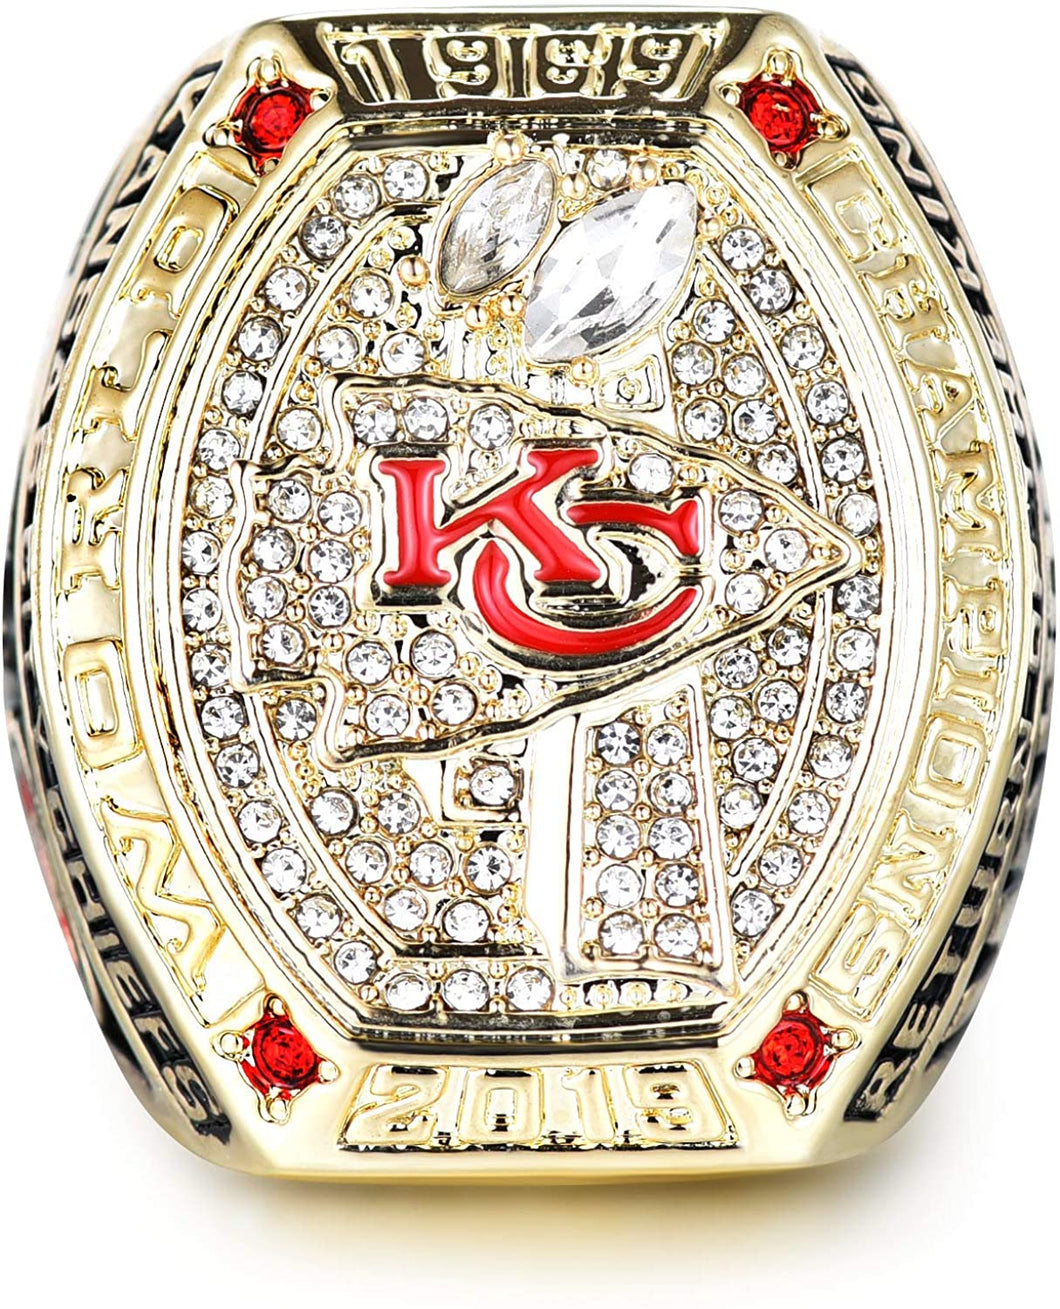 Kansas City Chiefs Super Bowl Ring Replica Image to u